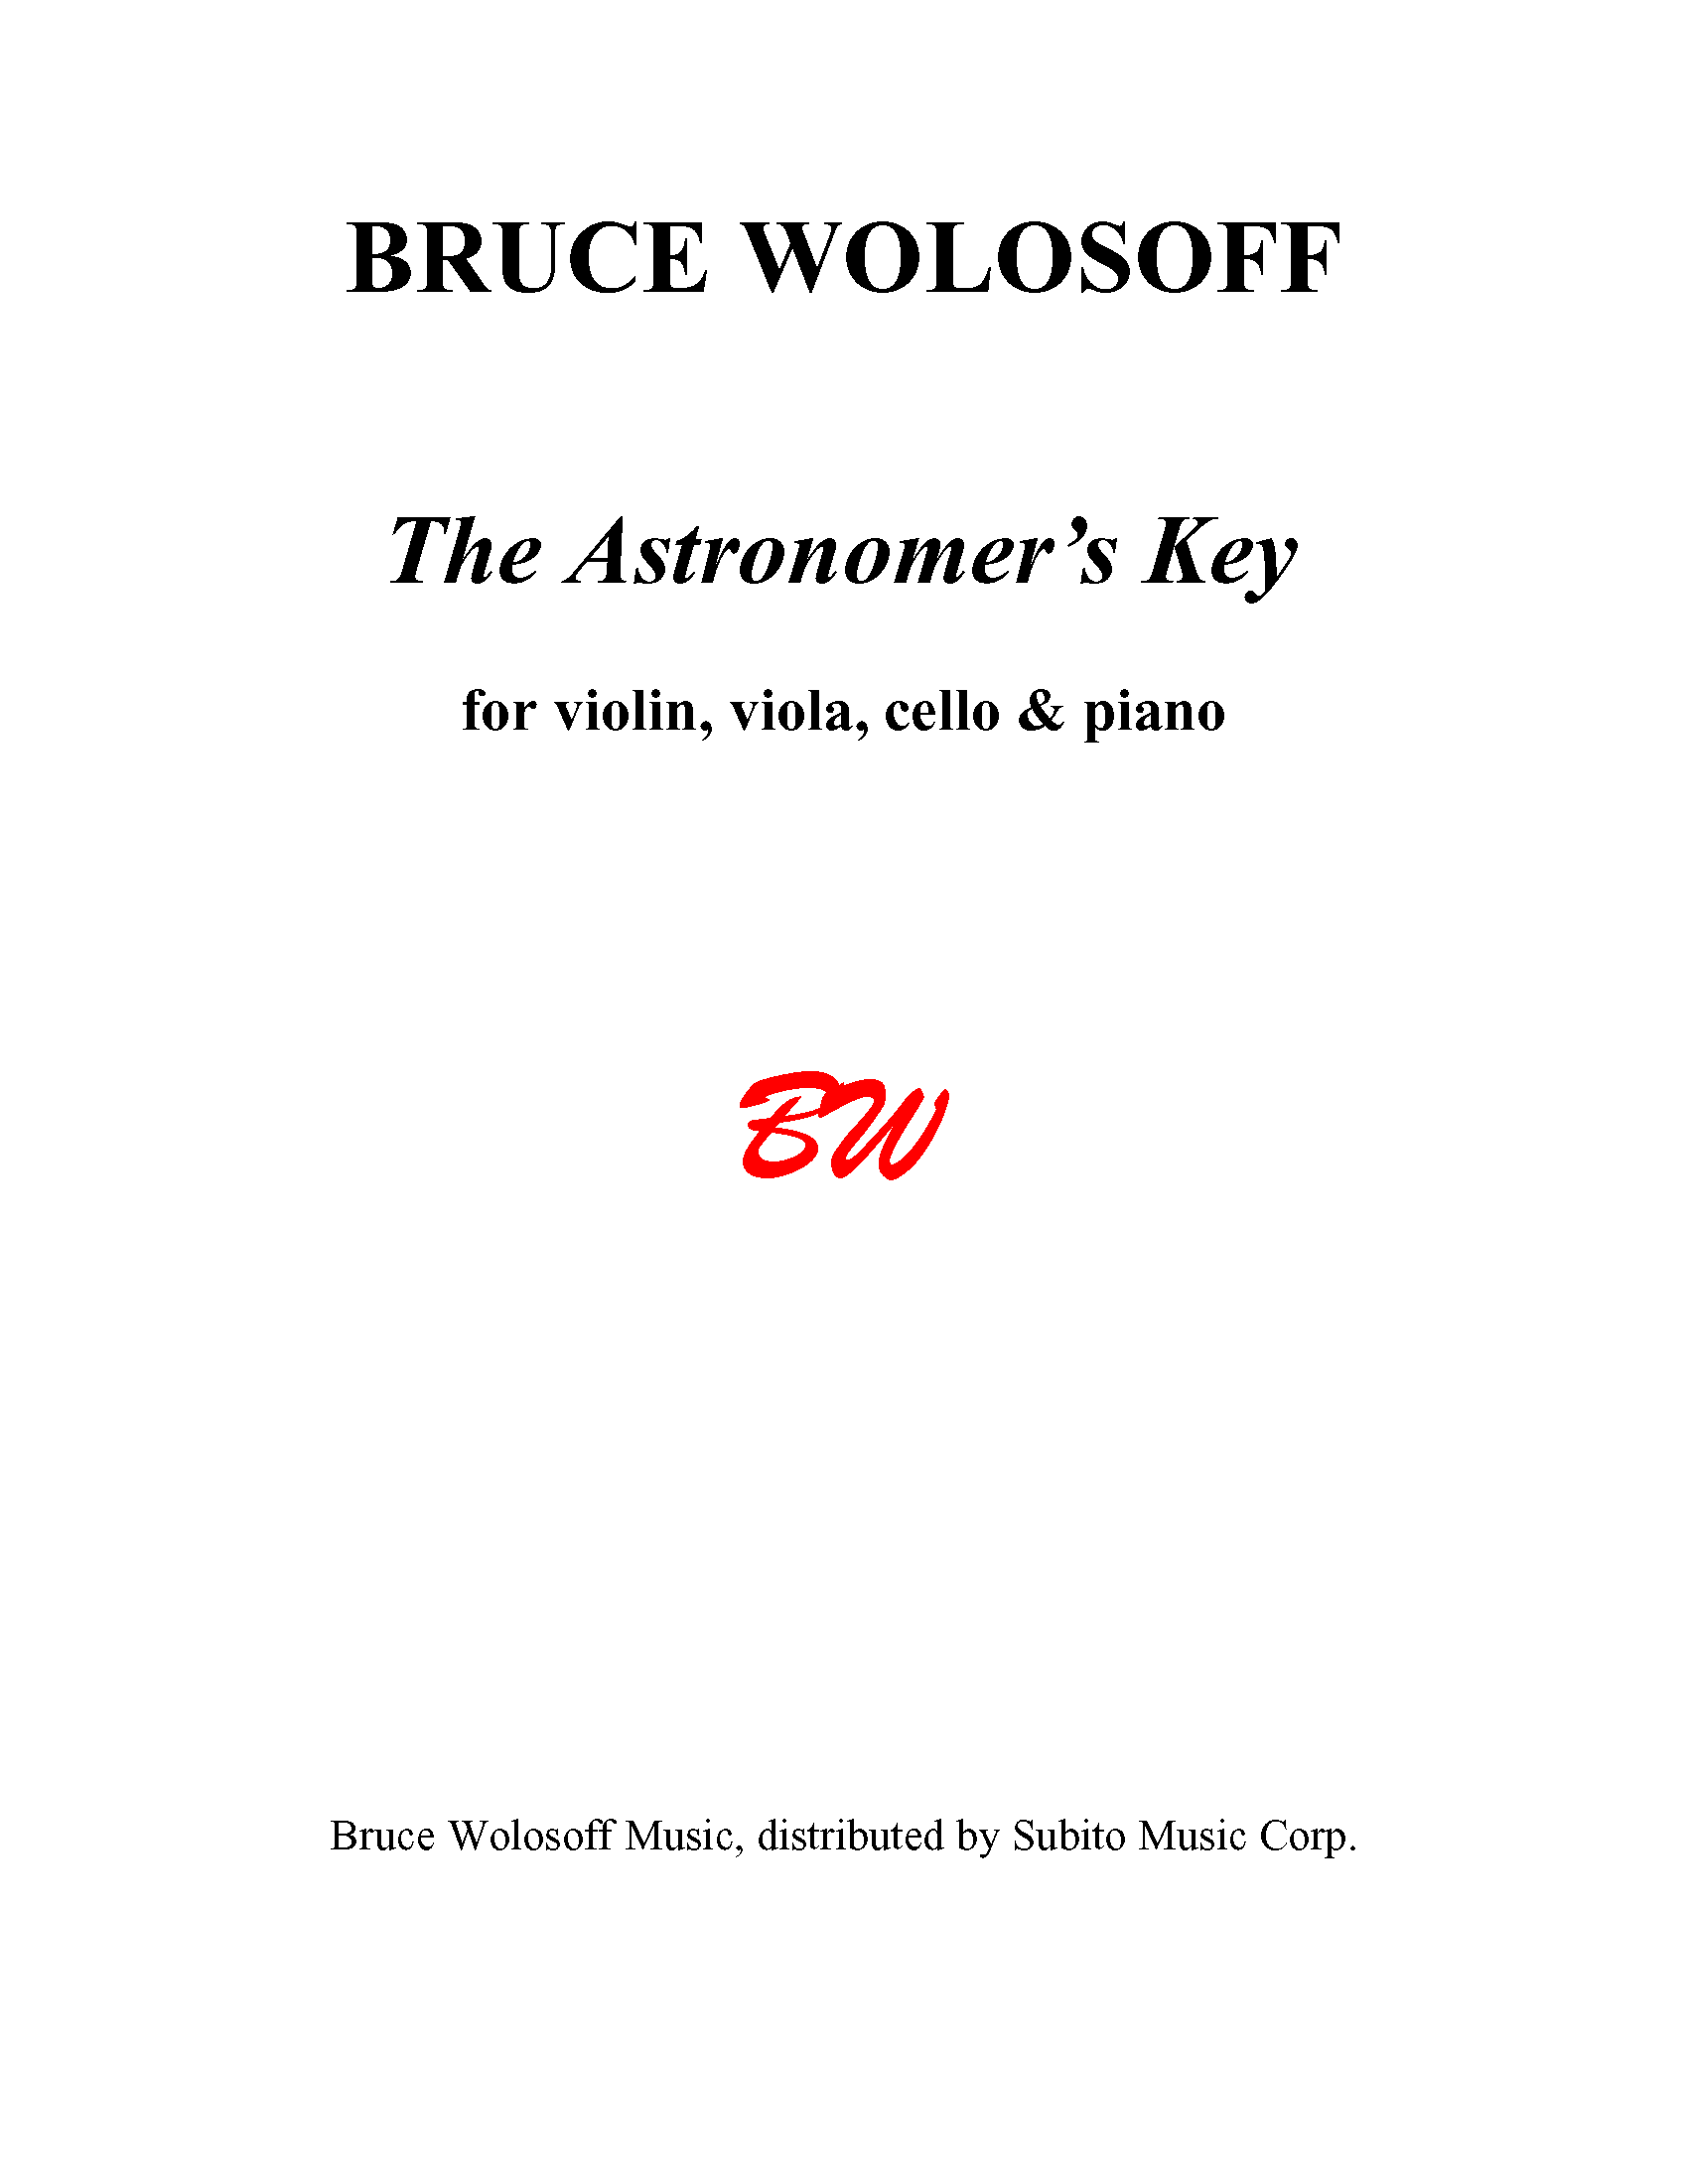 The Astronomer's Key for Violin, Viola, Violoncello & Piano